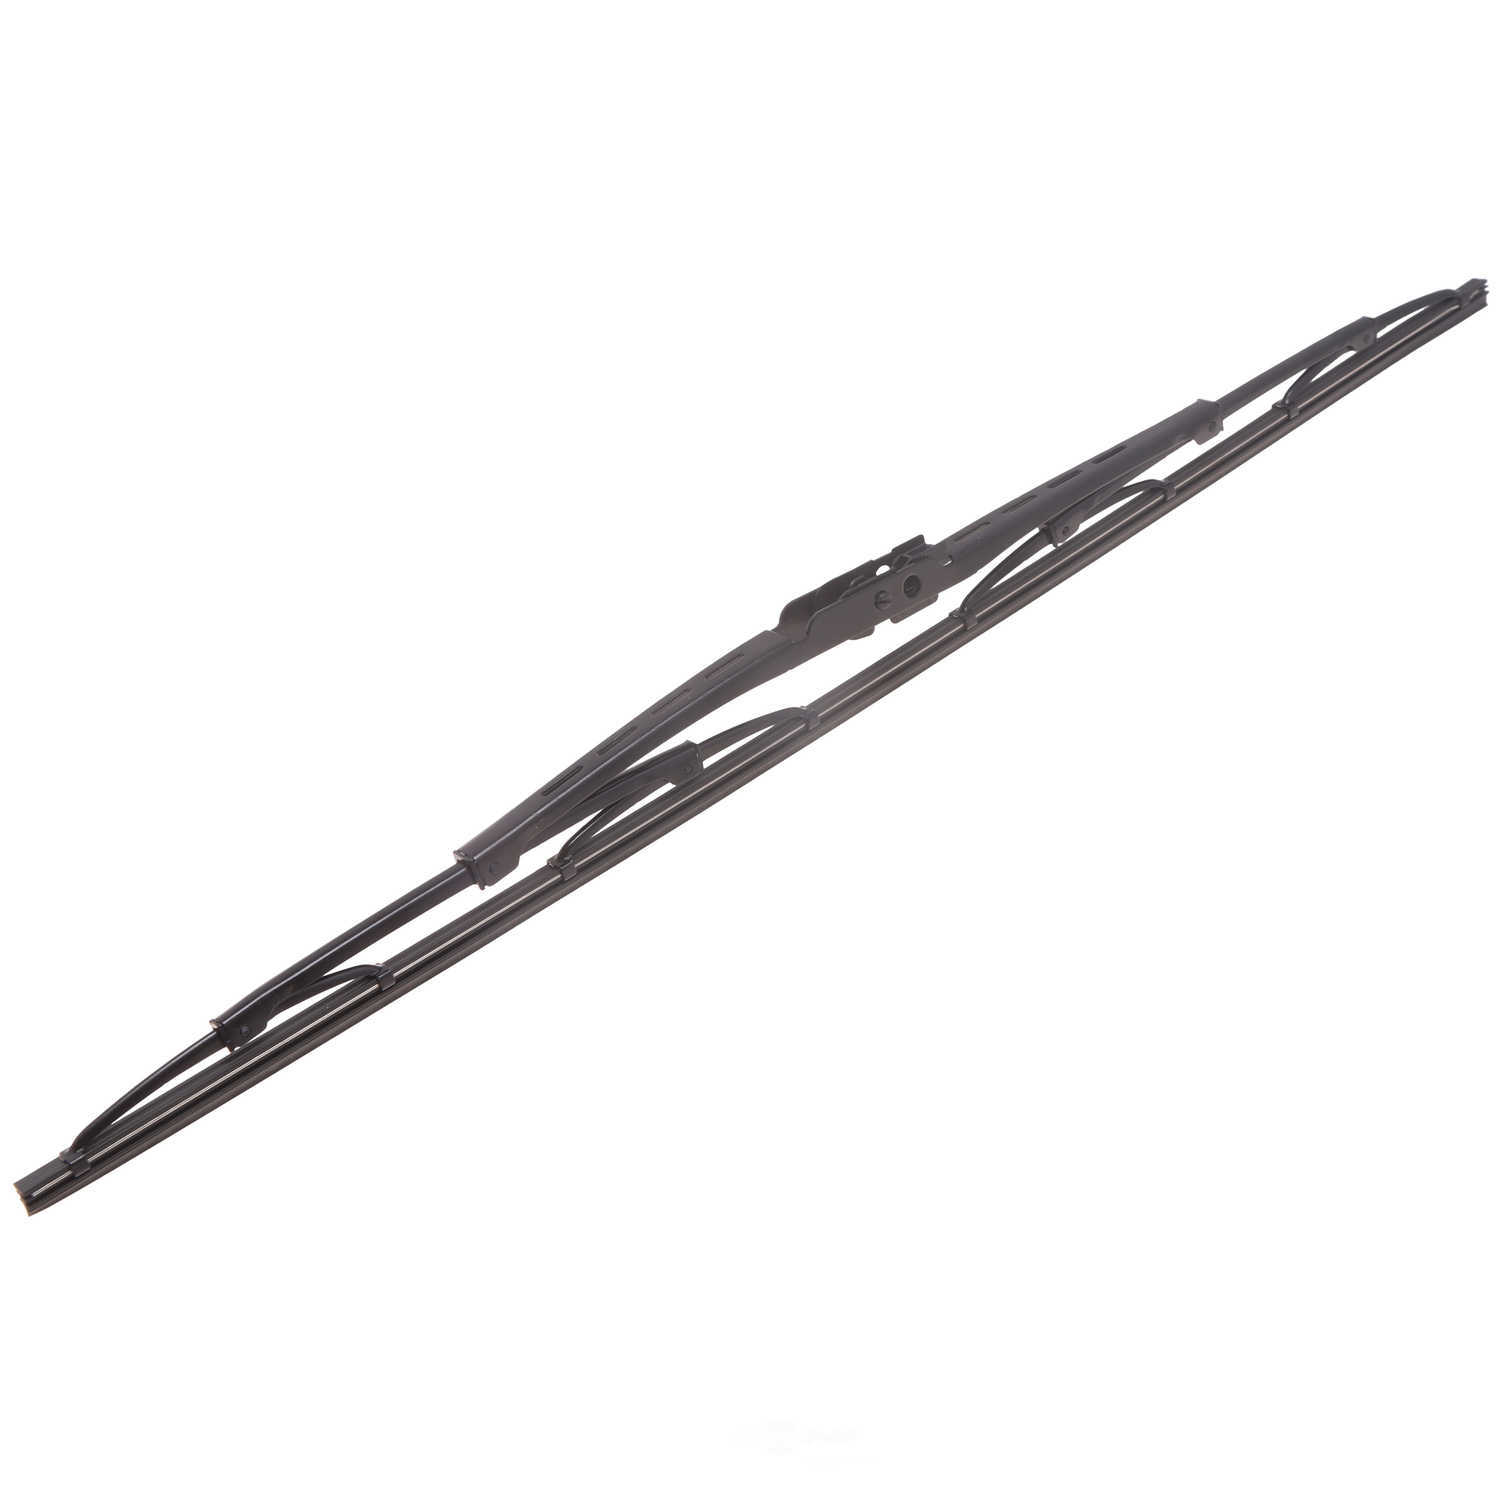 ANCO WIPER PRODUCTS - ANCO 31-Series Wiper Blade - ANC 31-22